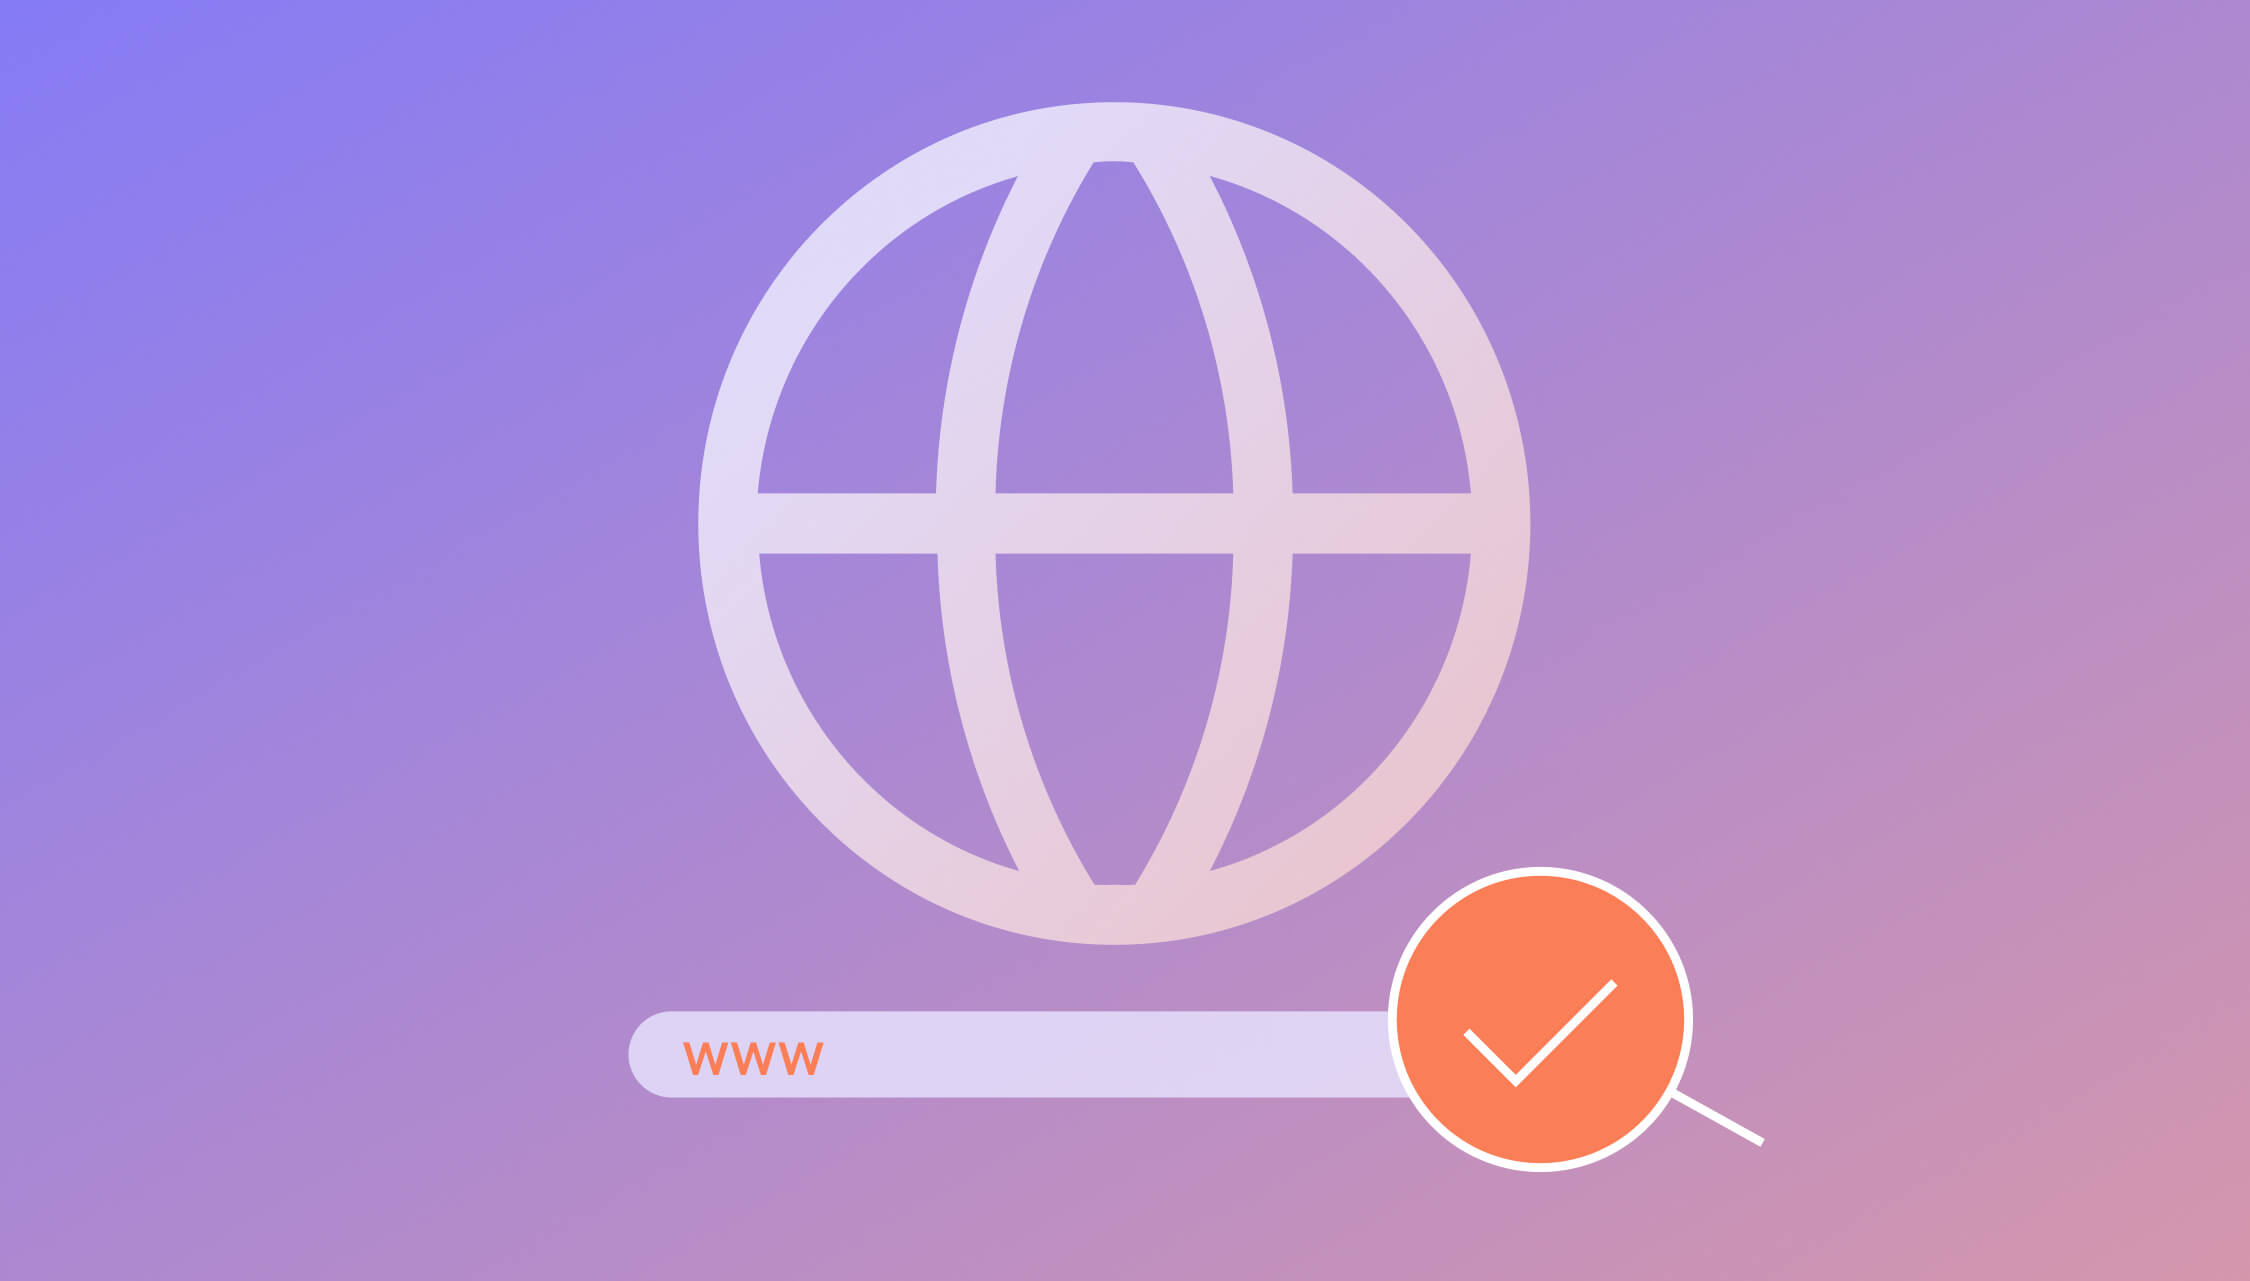 Internet-Weltkugel mit Suchleiste und Lupe auf lila Hintergrund.